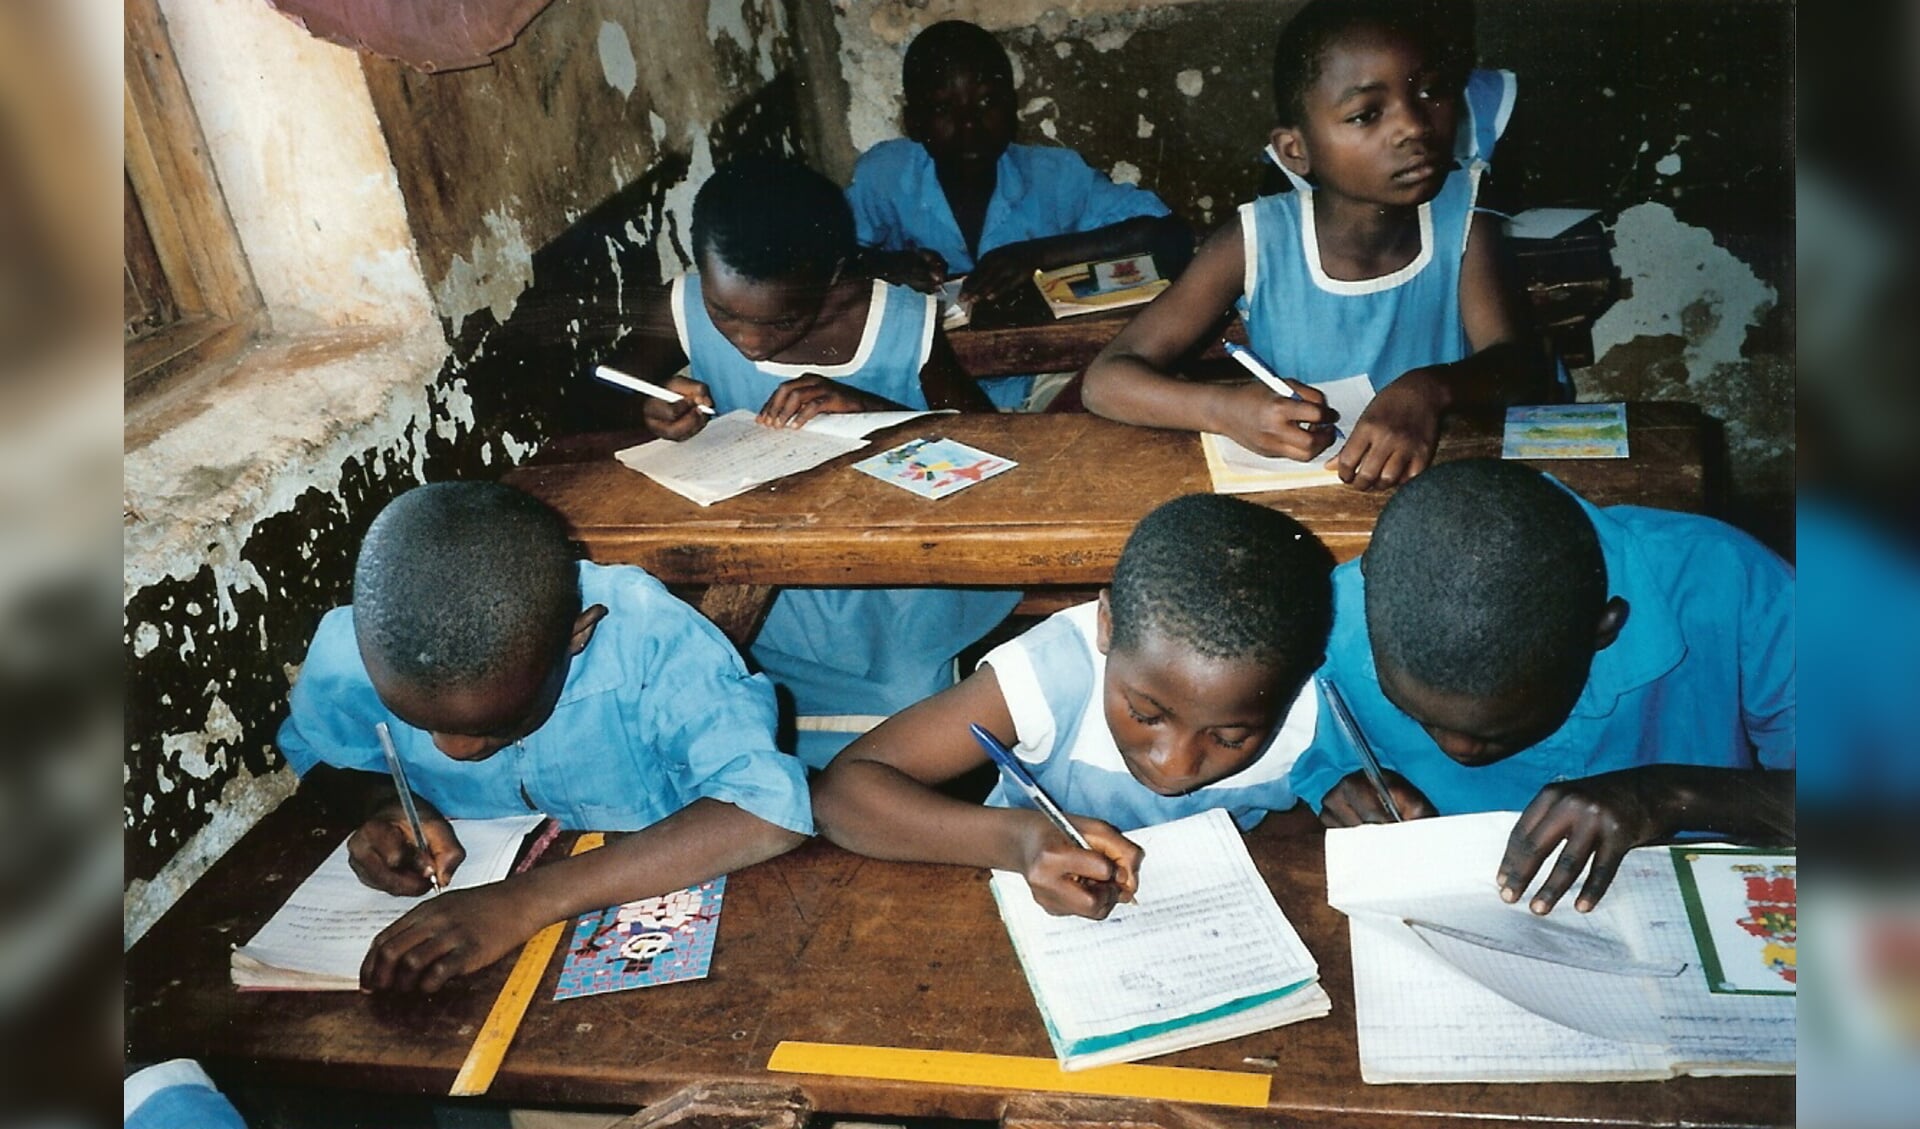 Deze keer gaat de opbrengst naar schoolgeld voor kansarme kinderen van de scholen die door Actie Kameroen zijn gerenoveerd tot moderne basisscholen. (Foto: Actie Kameroen Assendelft)